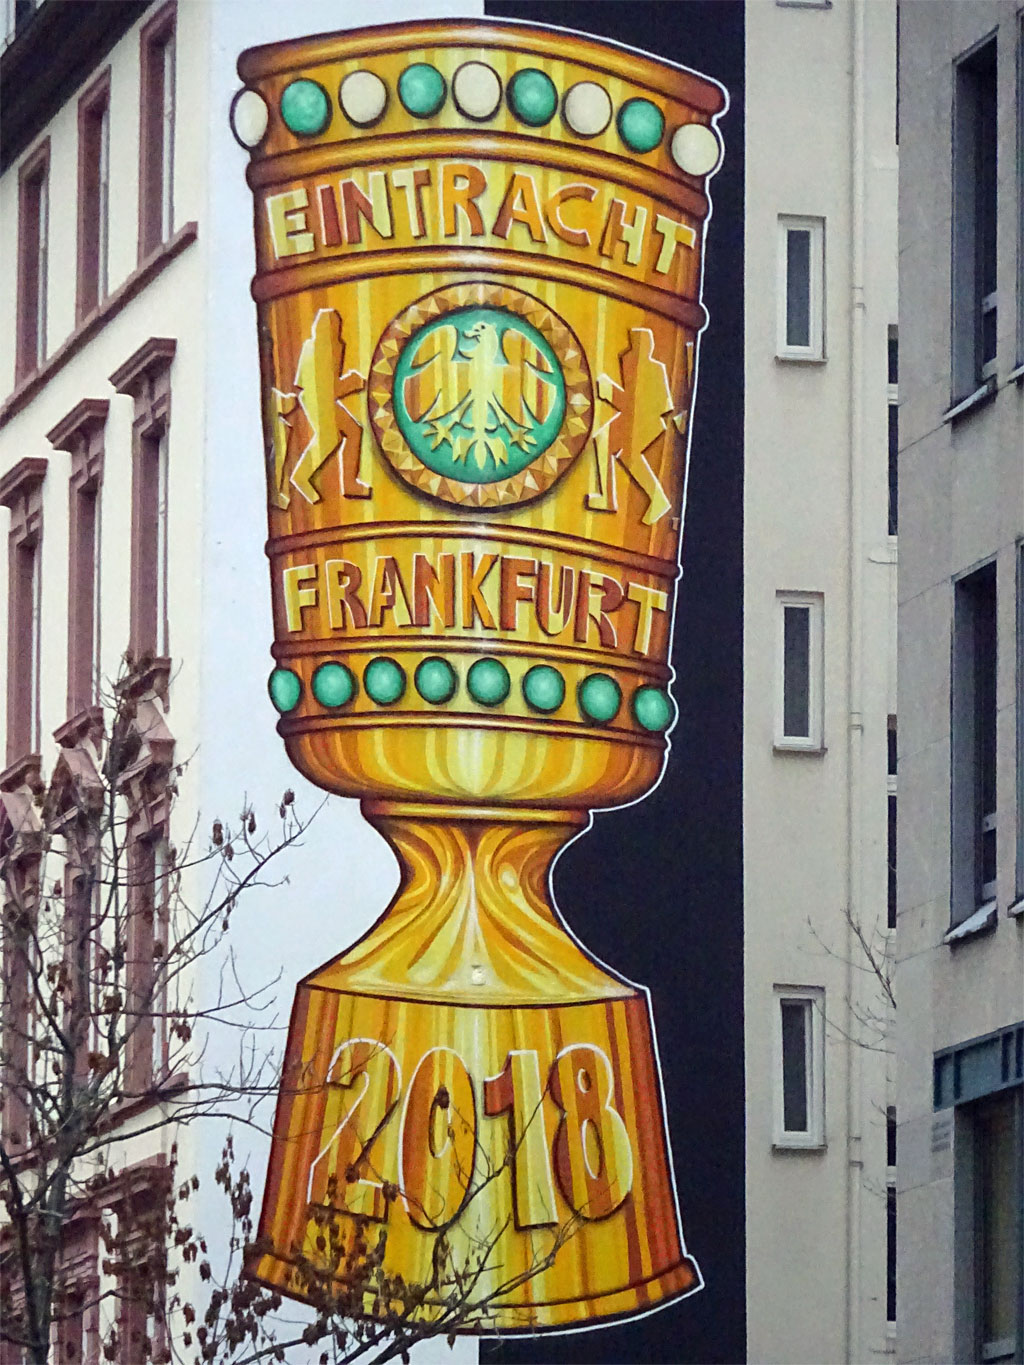 DFB-Pokal auf schwarz-weißen Hintergrund an Hausfassade in Frankfurt